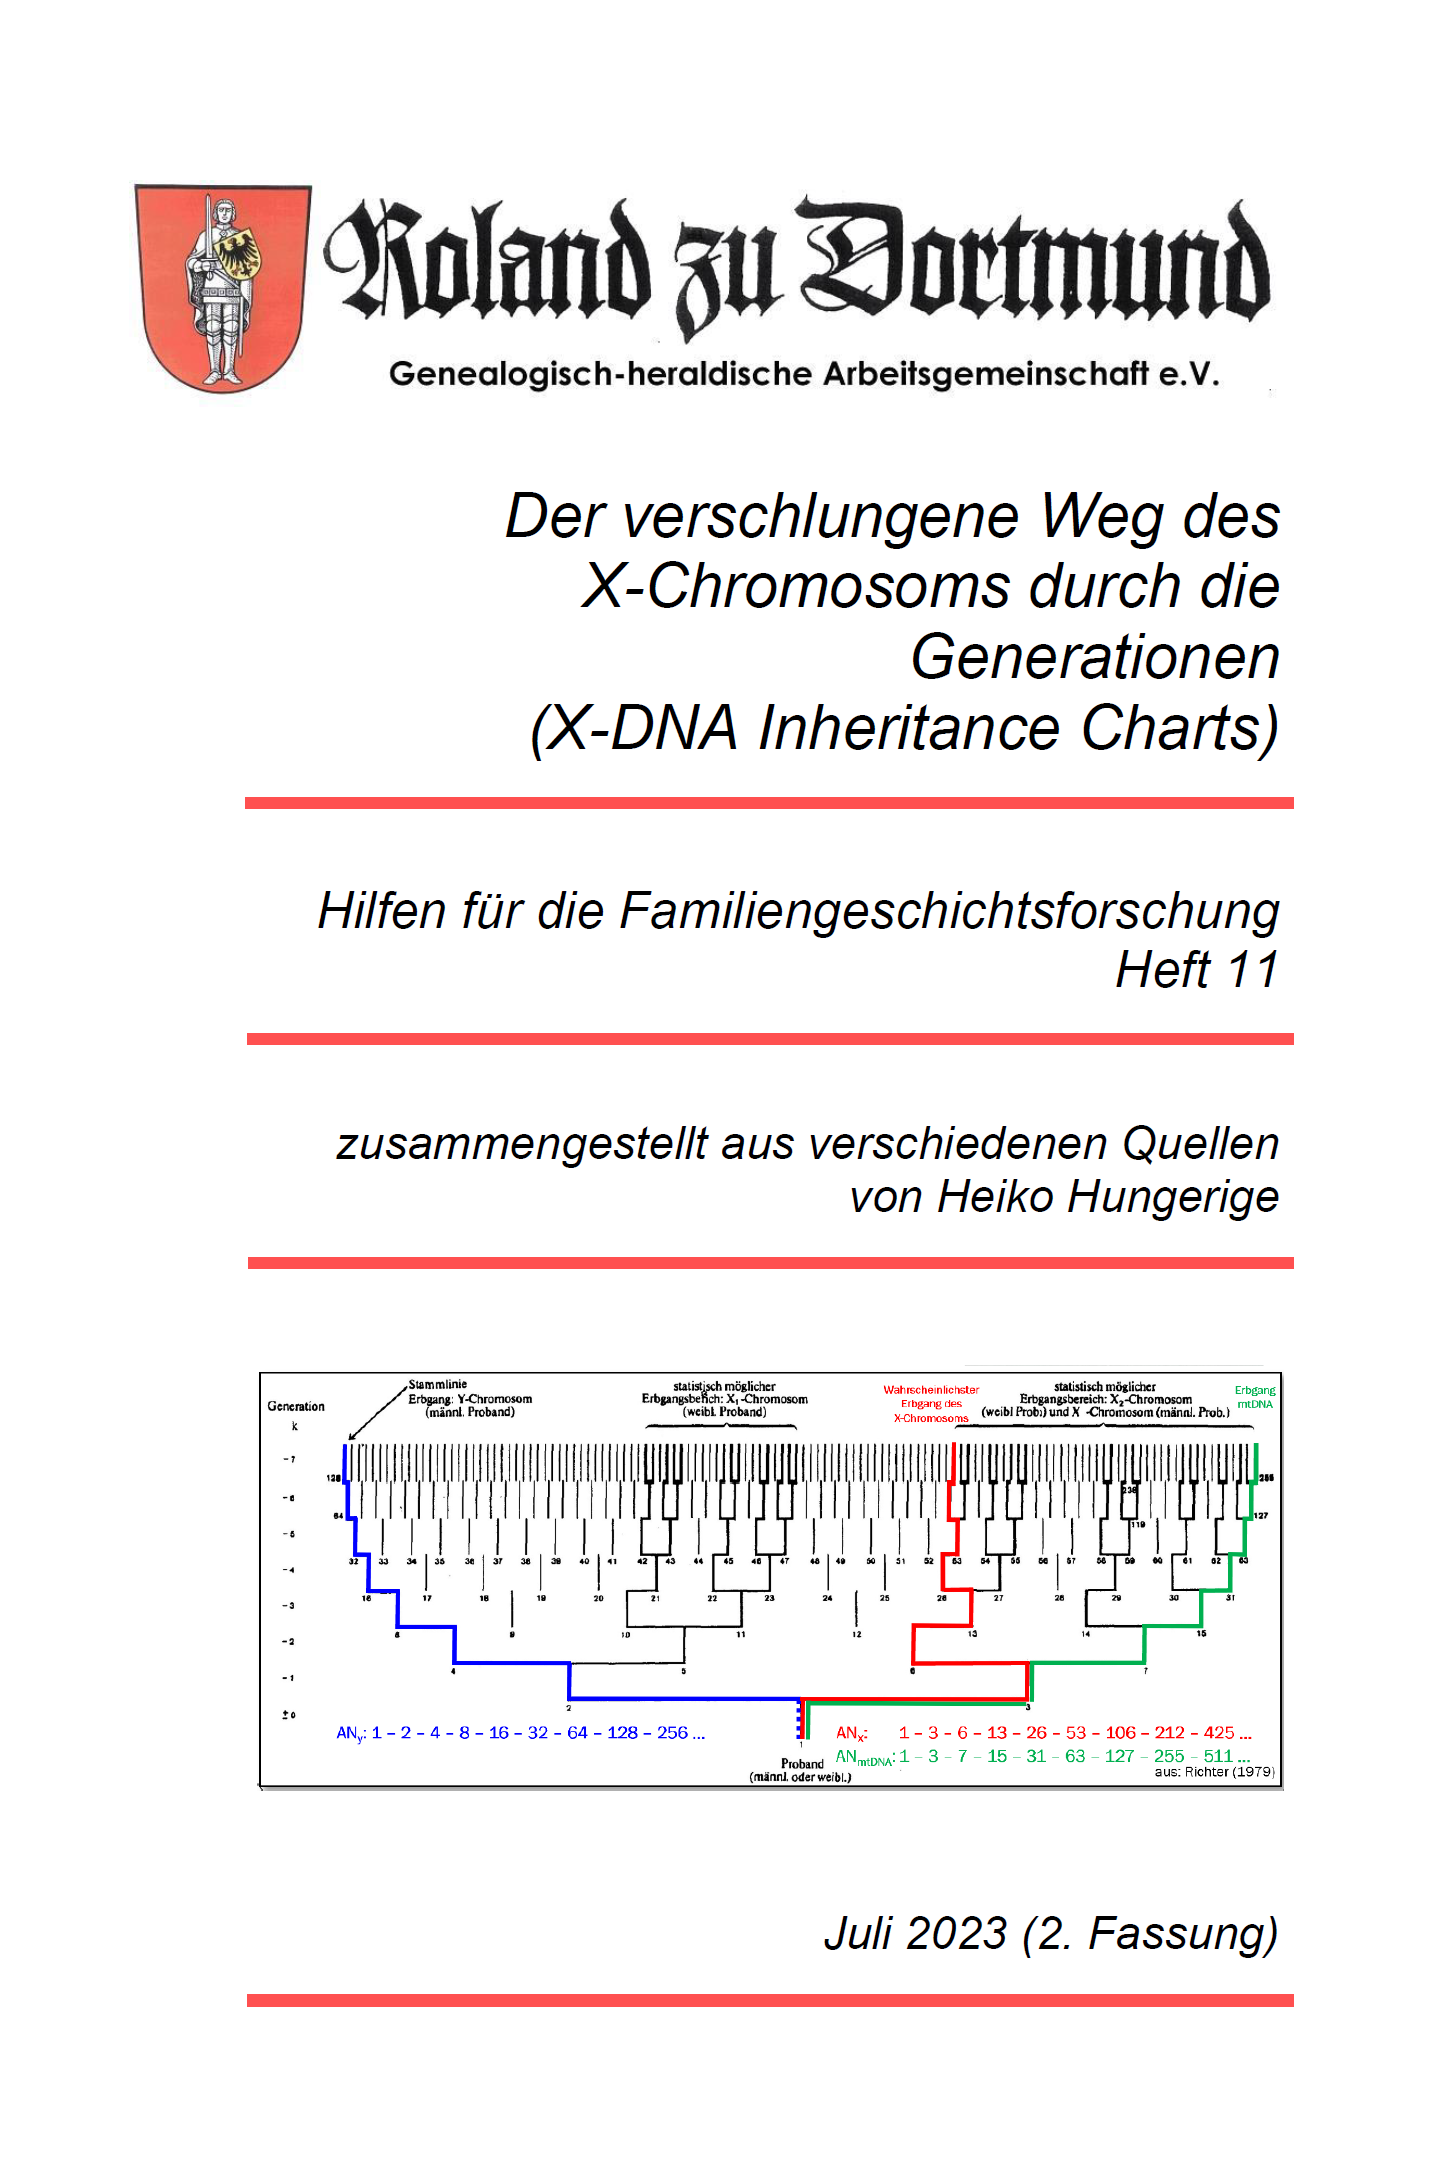 RzD-Forschungshilfen Heft 11 - Der verschlungene Weg des X-Chromosoms durch die Generationen